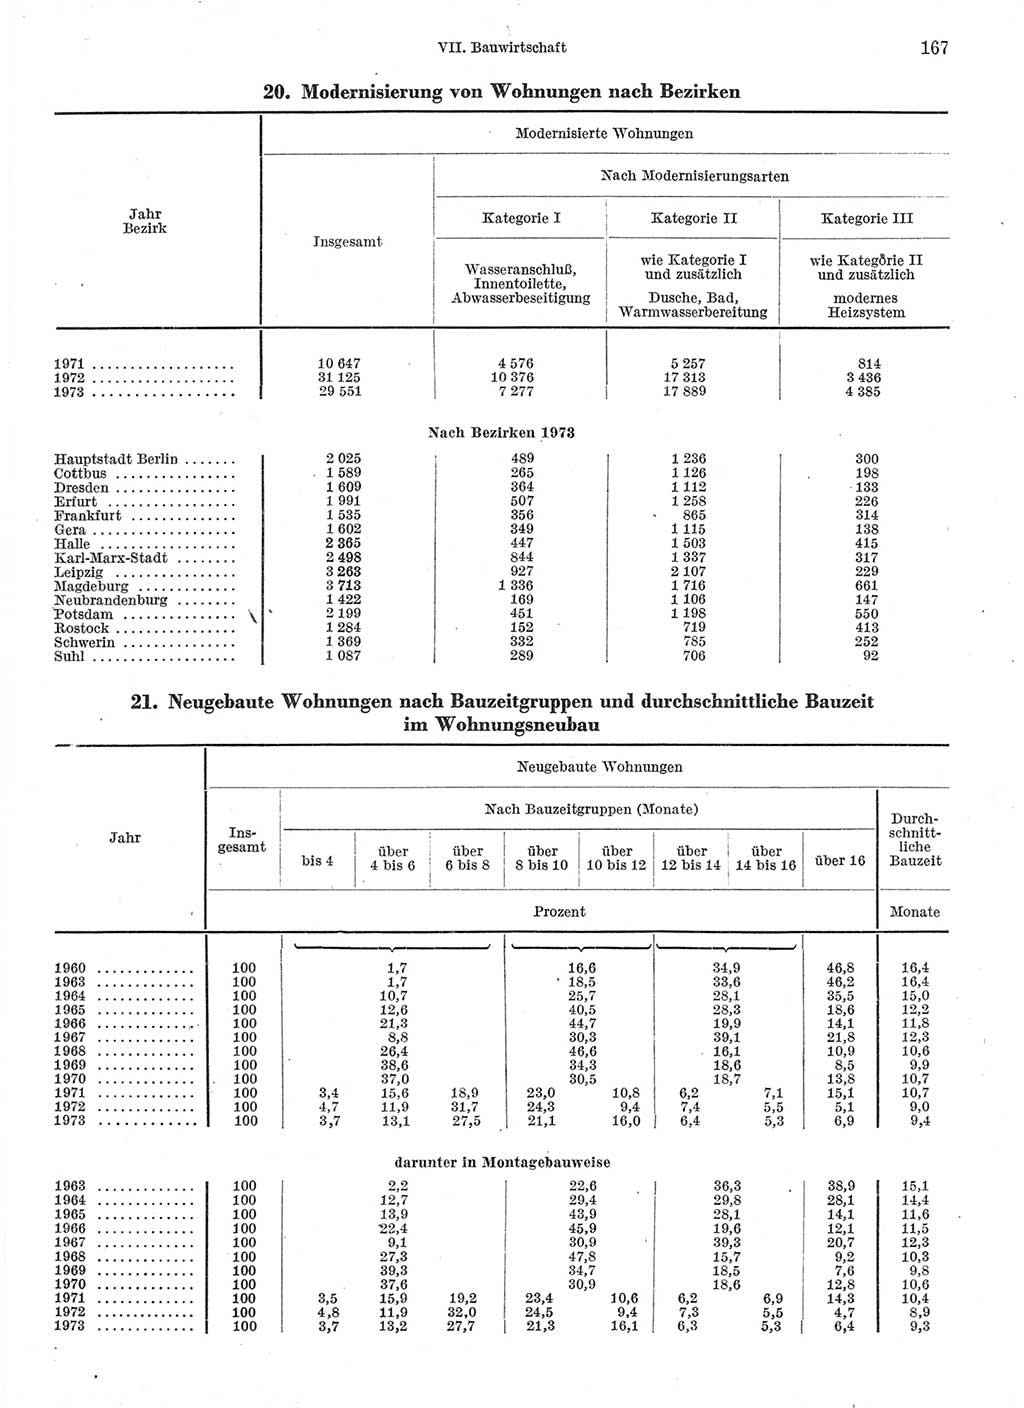 Statistisches Jahrbuch der Deutschen Demokratischen Republik (DDR) 1974, Seite 167 (Stat. Jb. DDR 1974, S. 167)